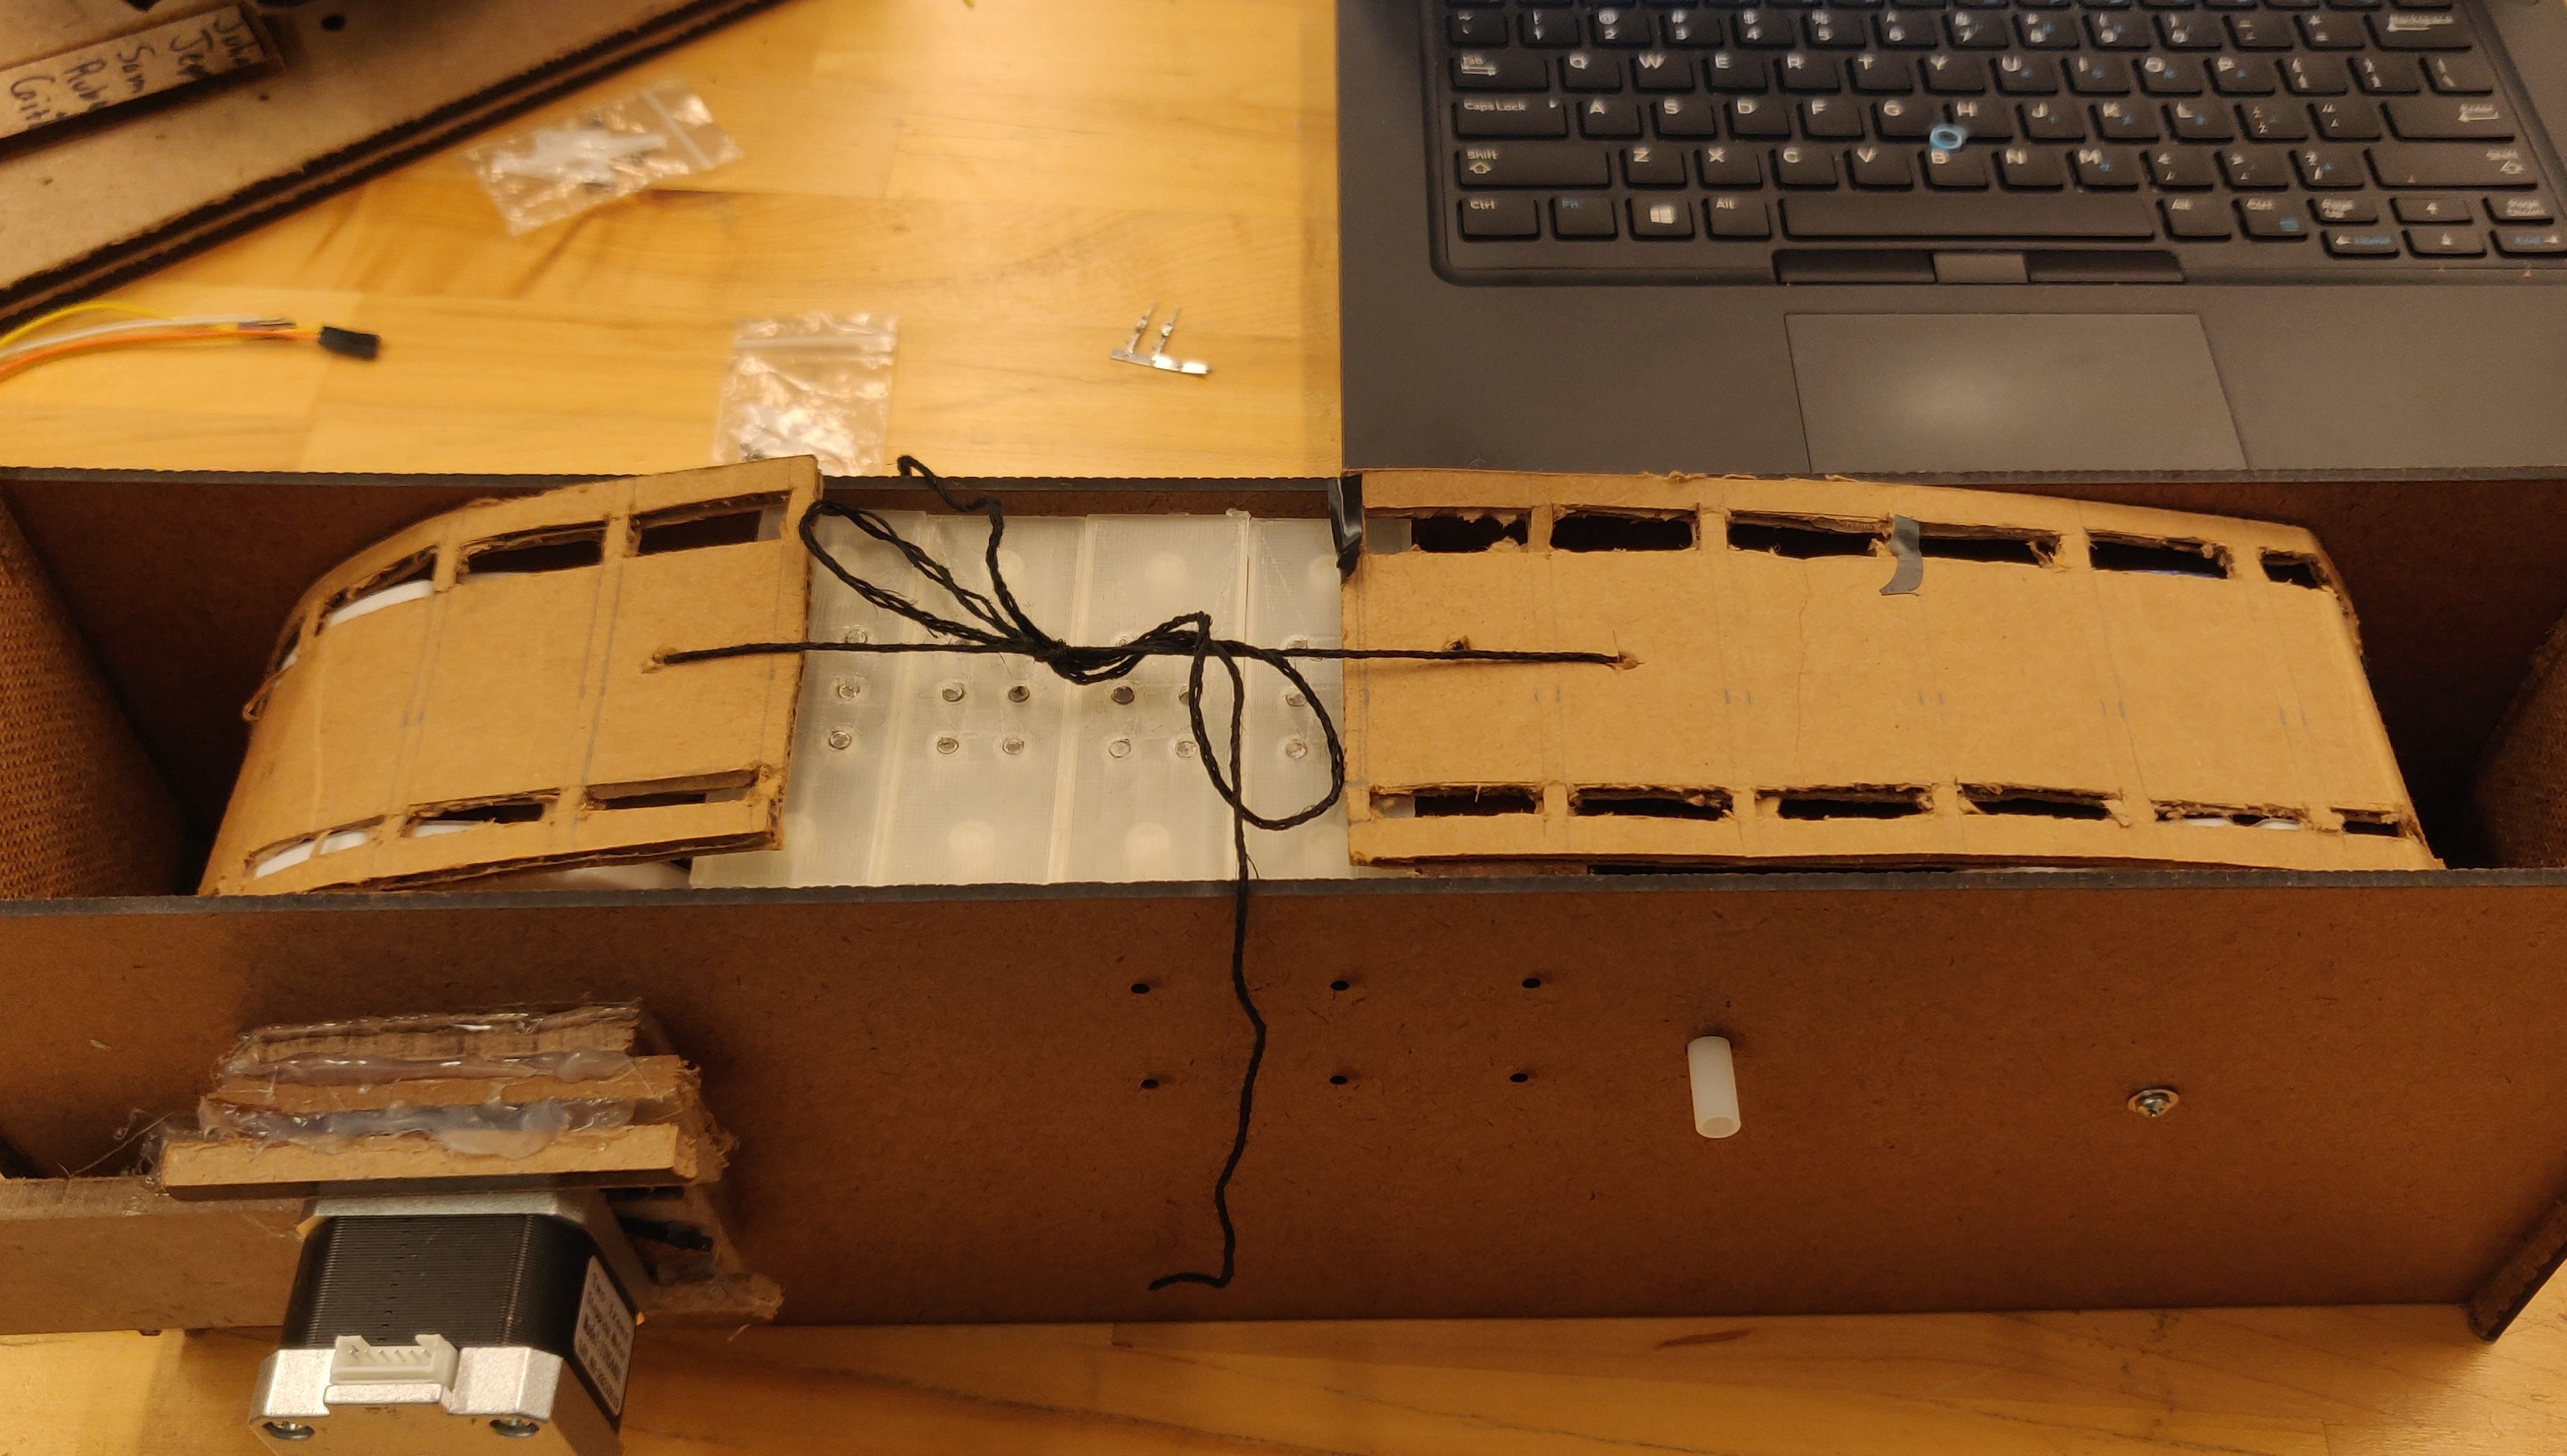 Cardboard belt in fiberboard housing